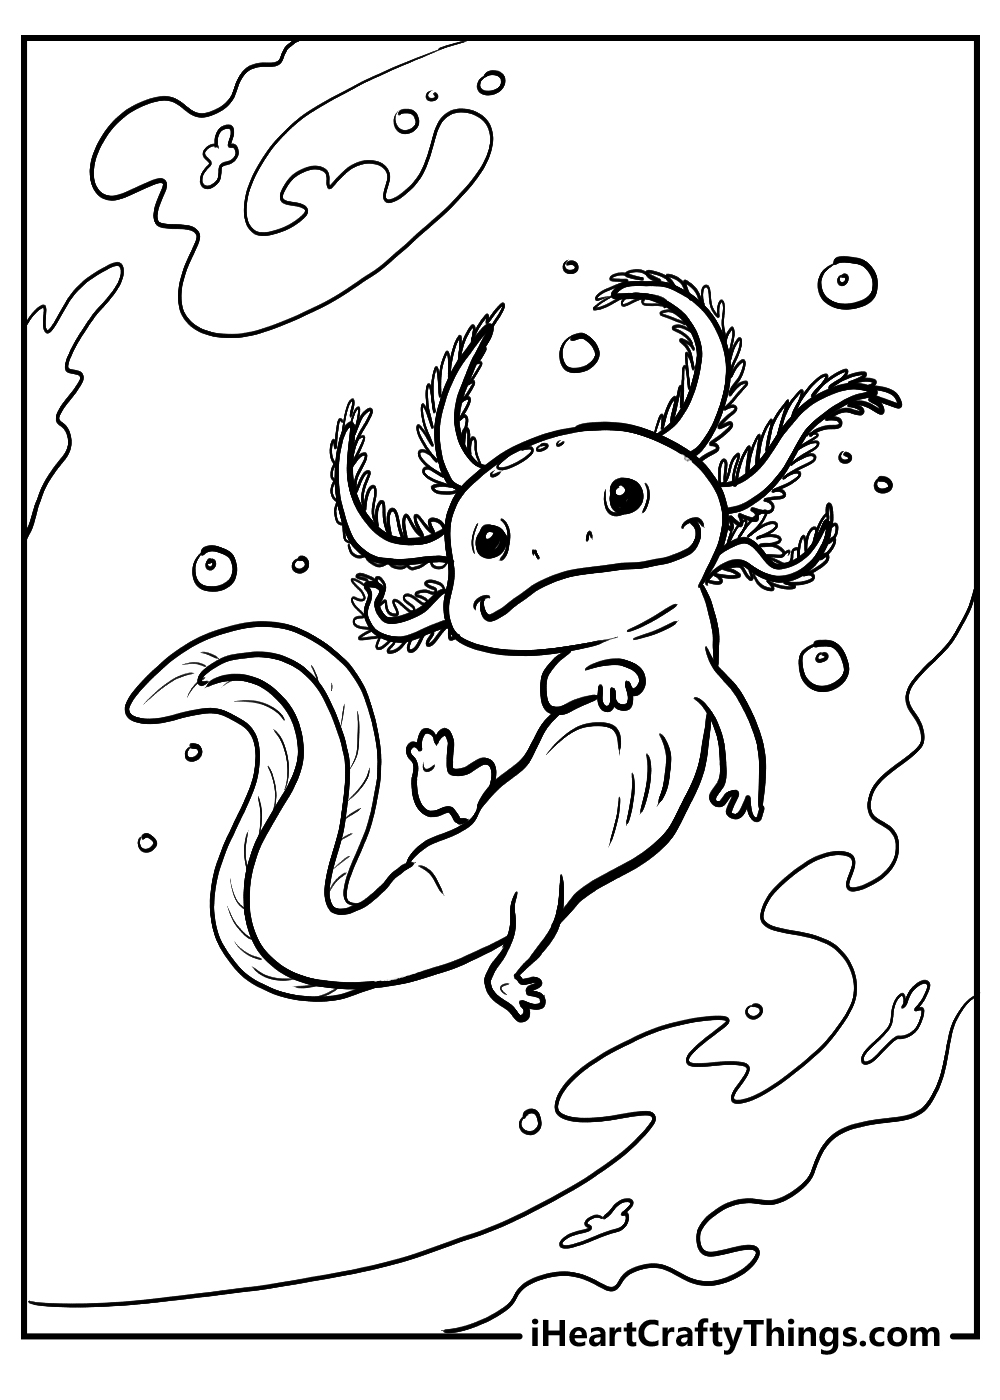 axolotl drawing coloring pages